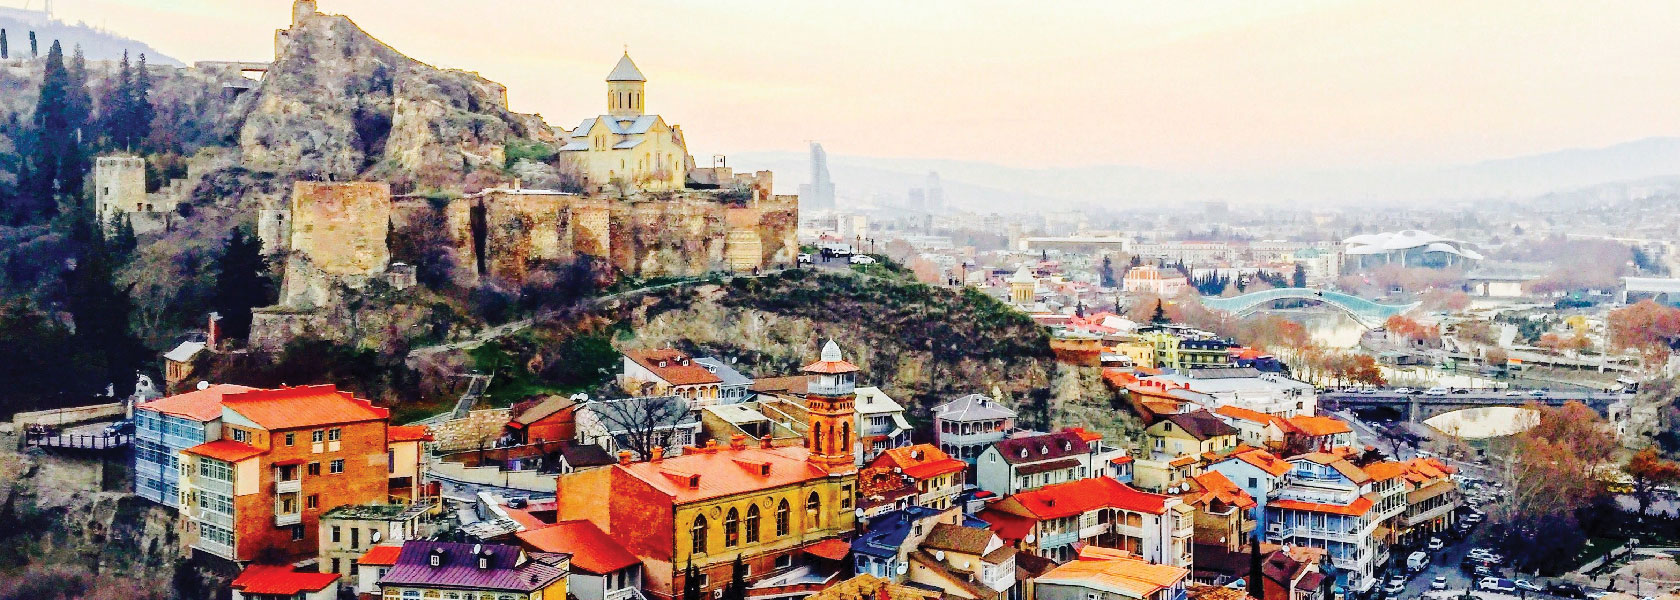 Tbilisi City Tour